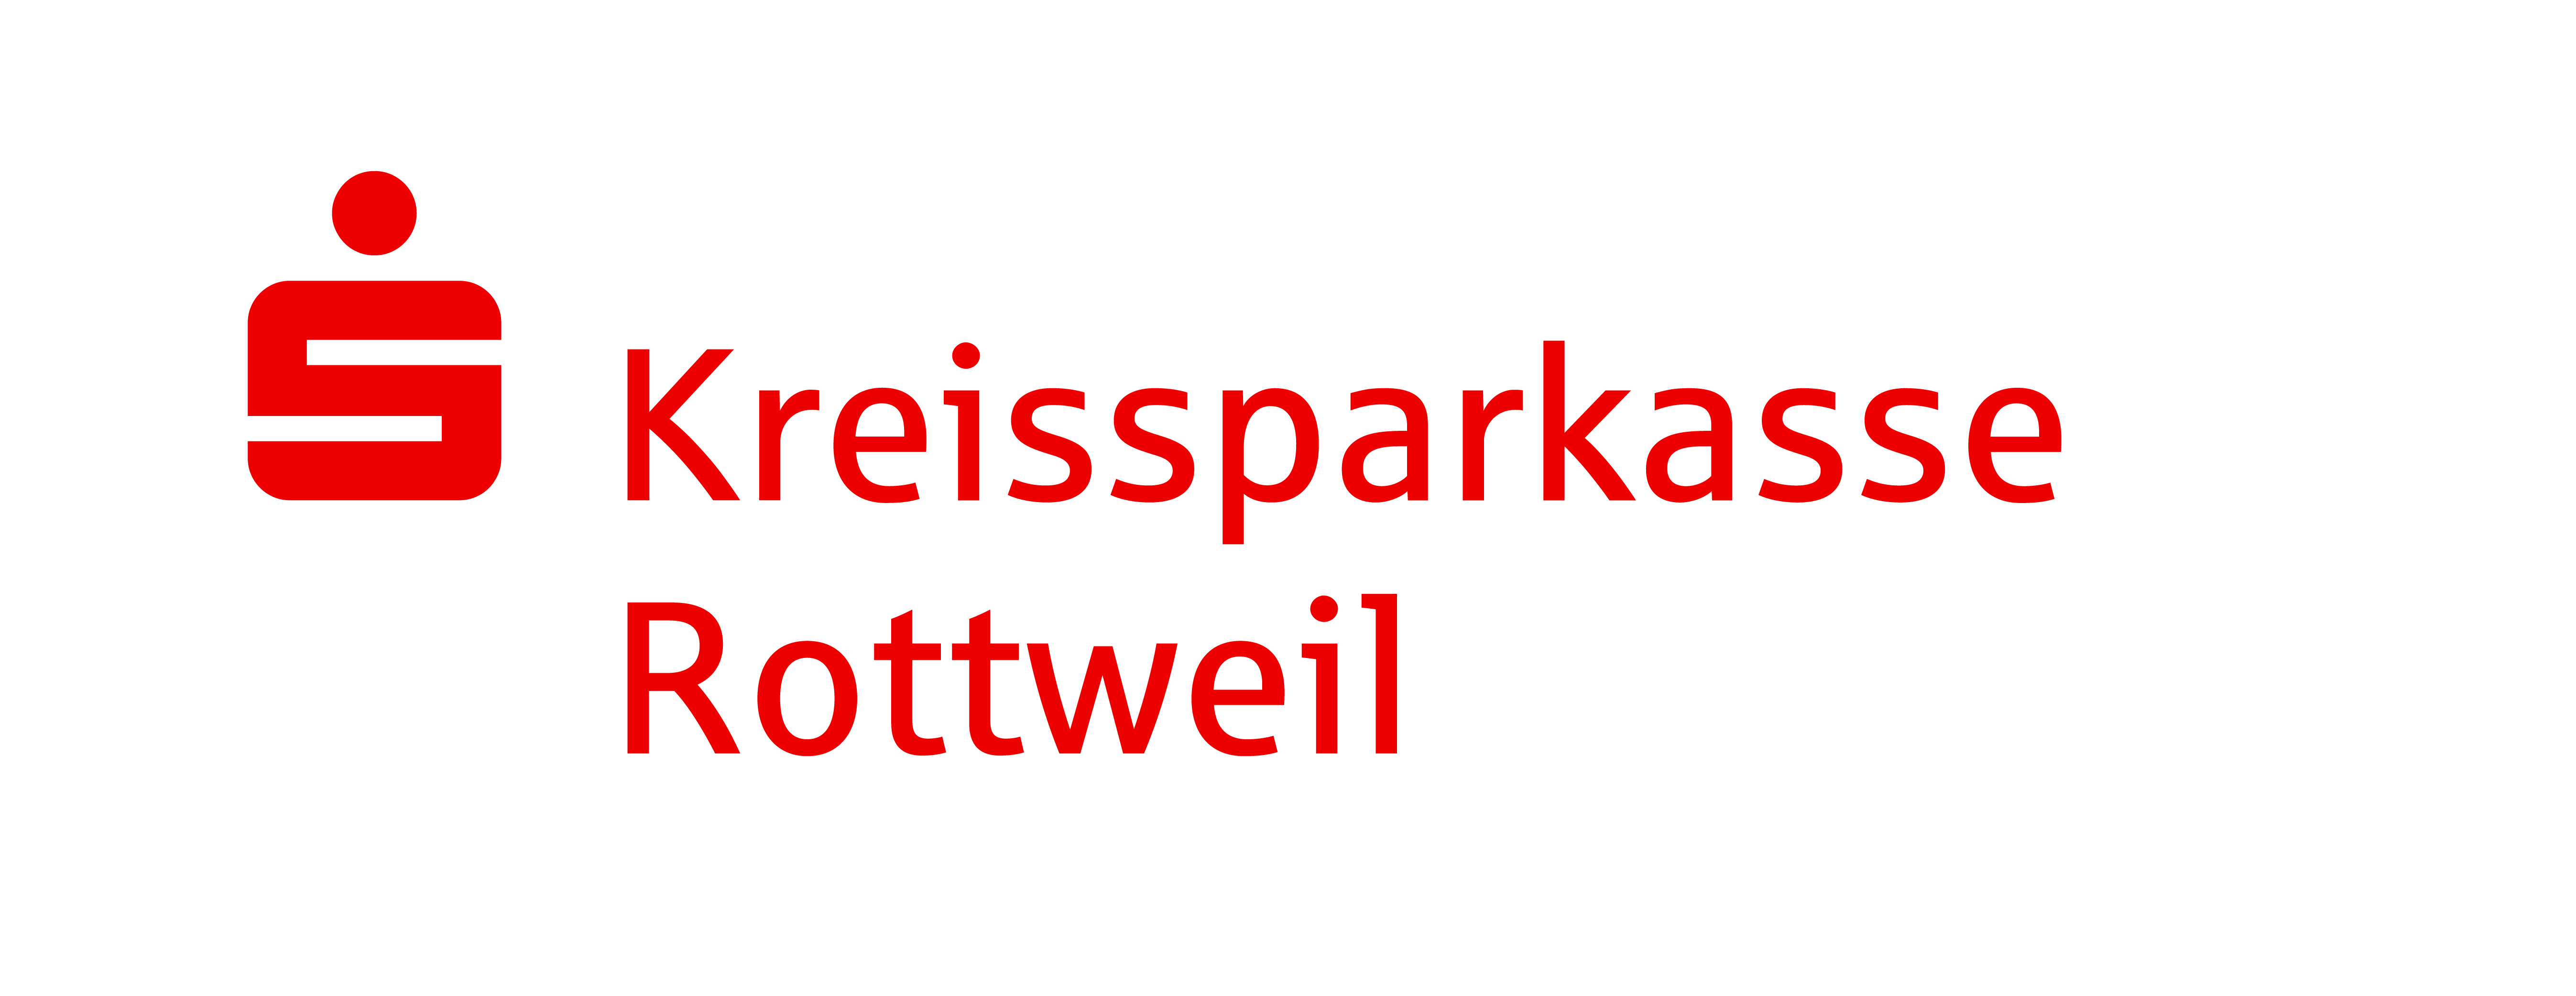 Kreissparkasse Rottweil Logo